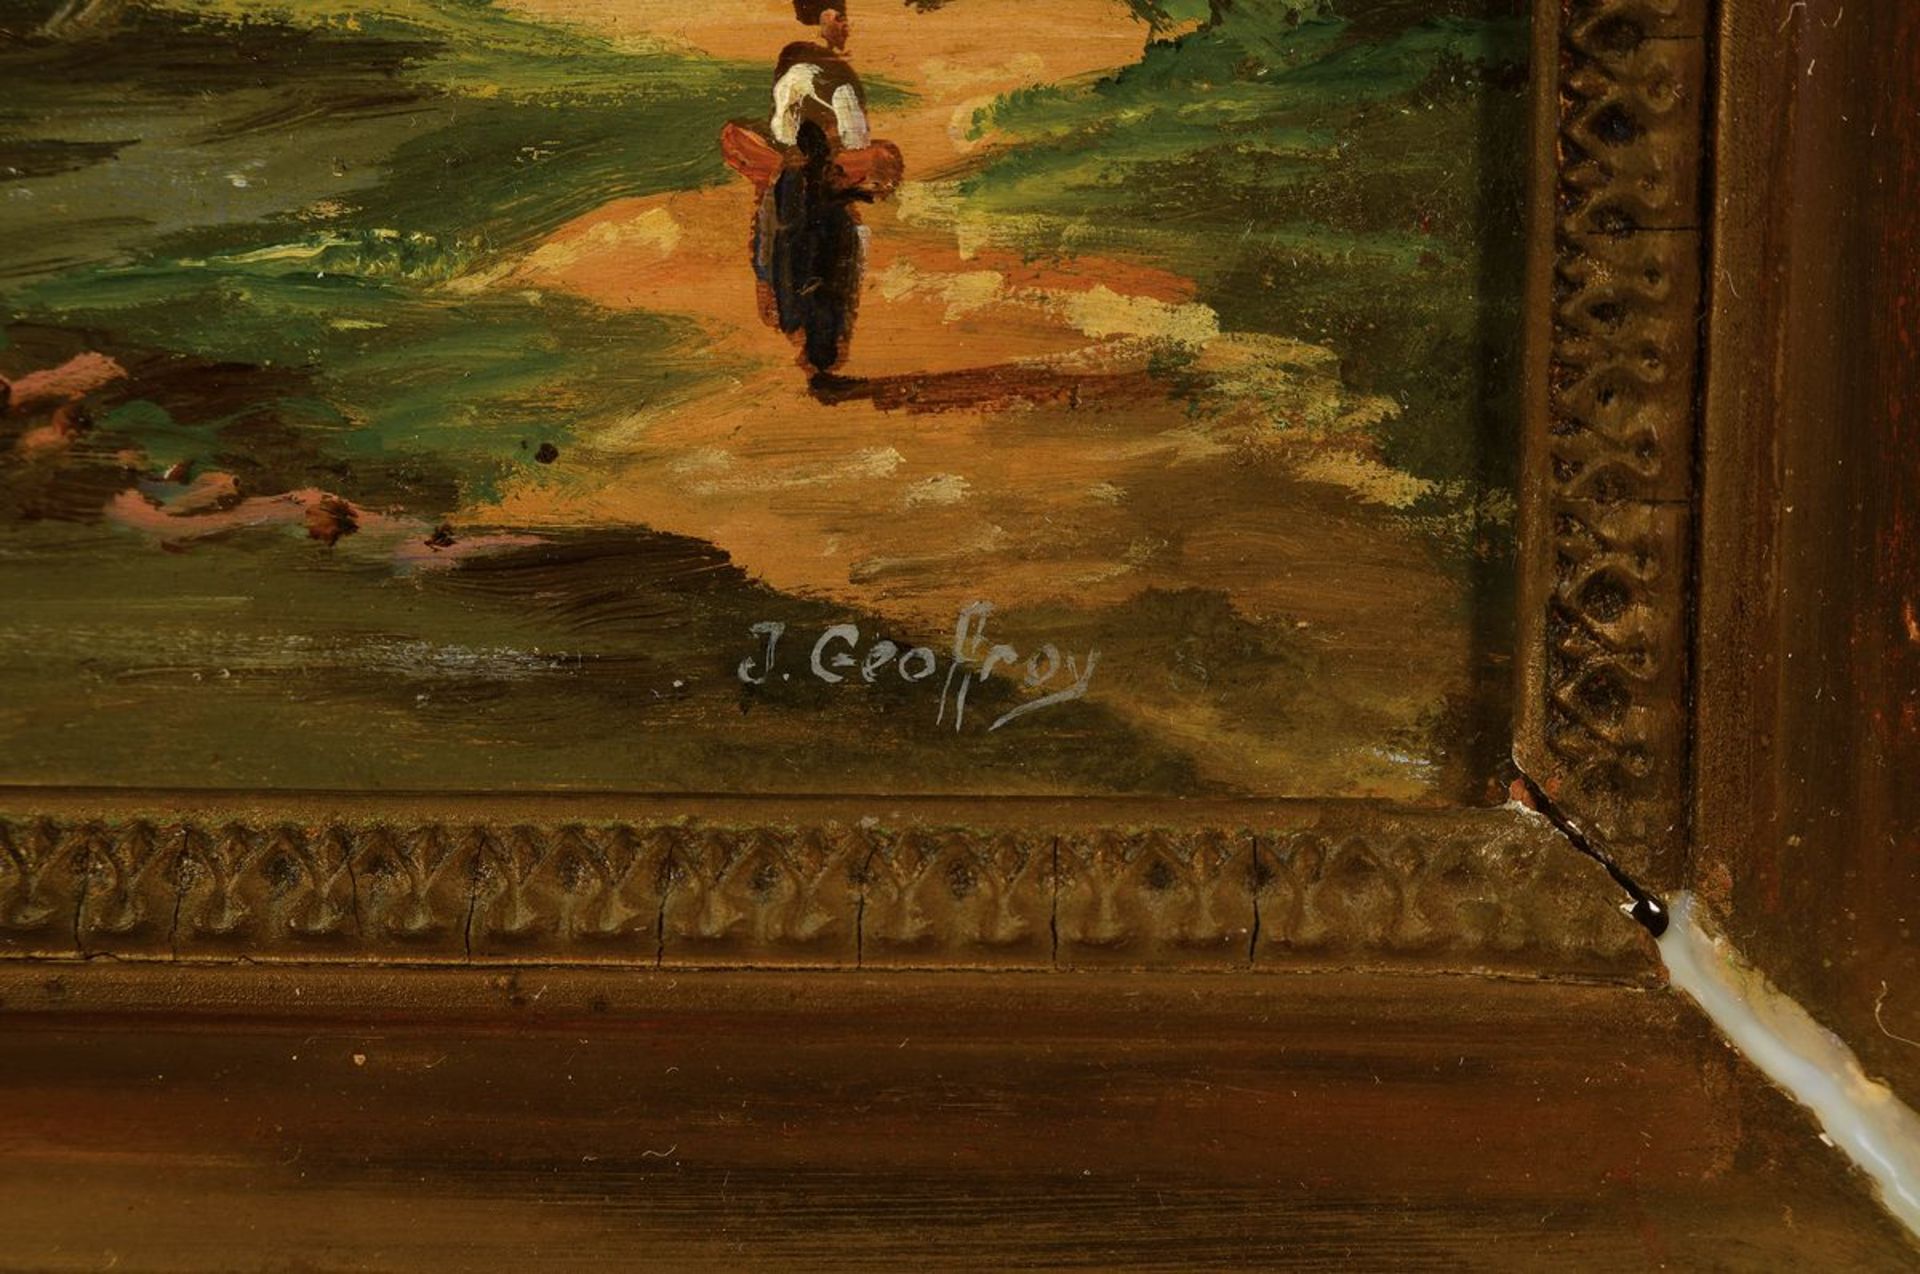 J. Geoffroy, wohl belgischer Künstler, um 1900, Meereslandschaft, Bucht mit reicher Personenstaffage - Bild 2 aus 3